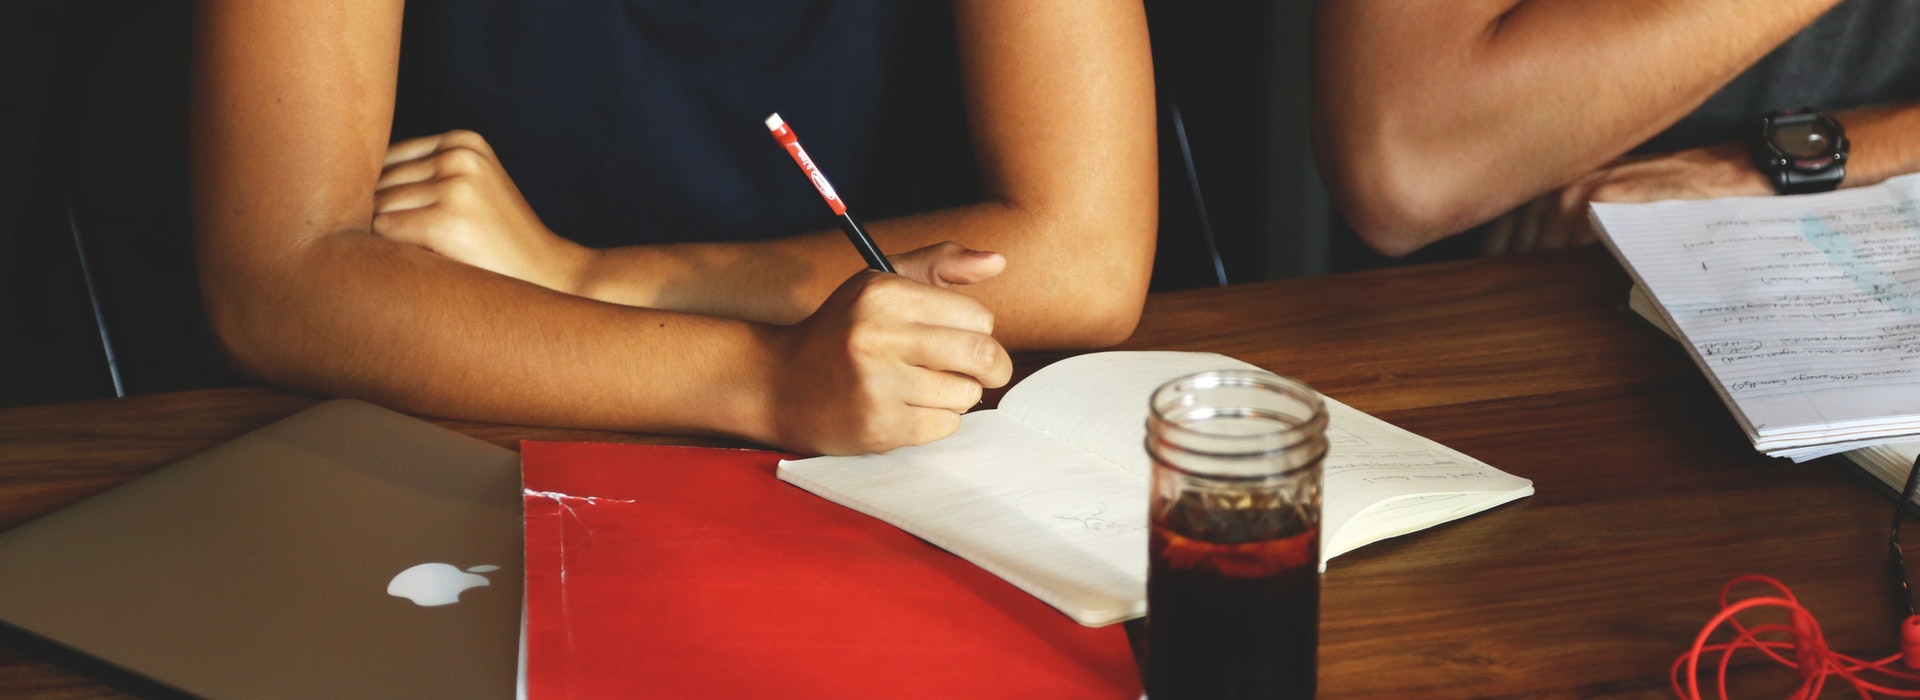 Photo gros plan d'une femme écrivant dans un cahier rouge sur un bureau avec une tasse de café devant elle